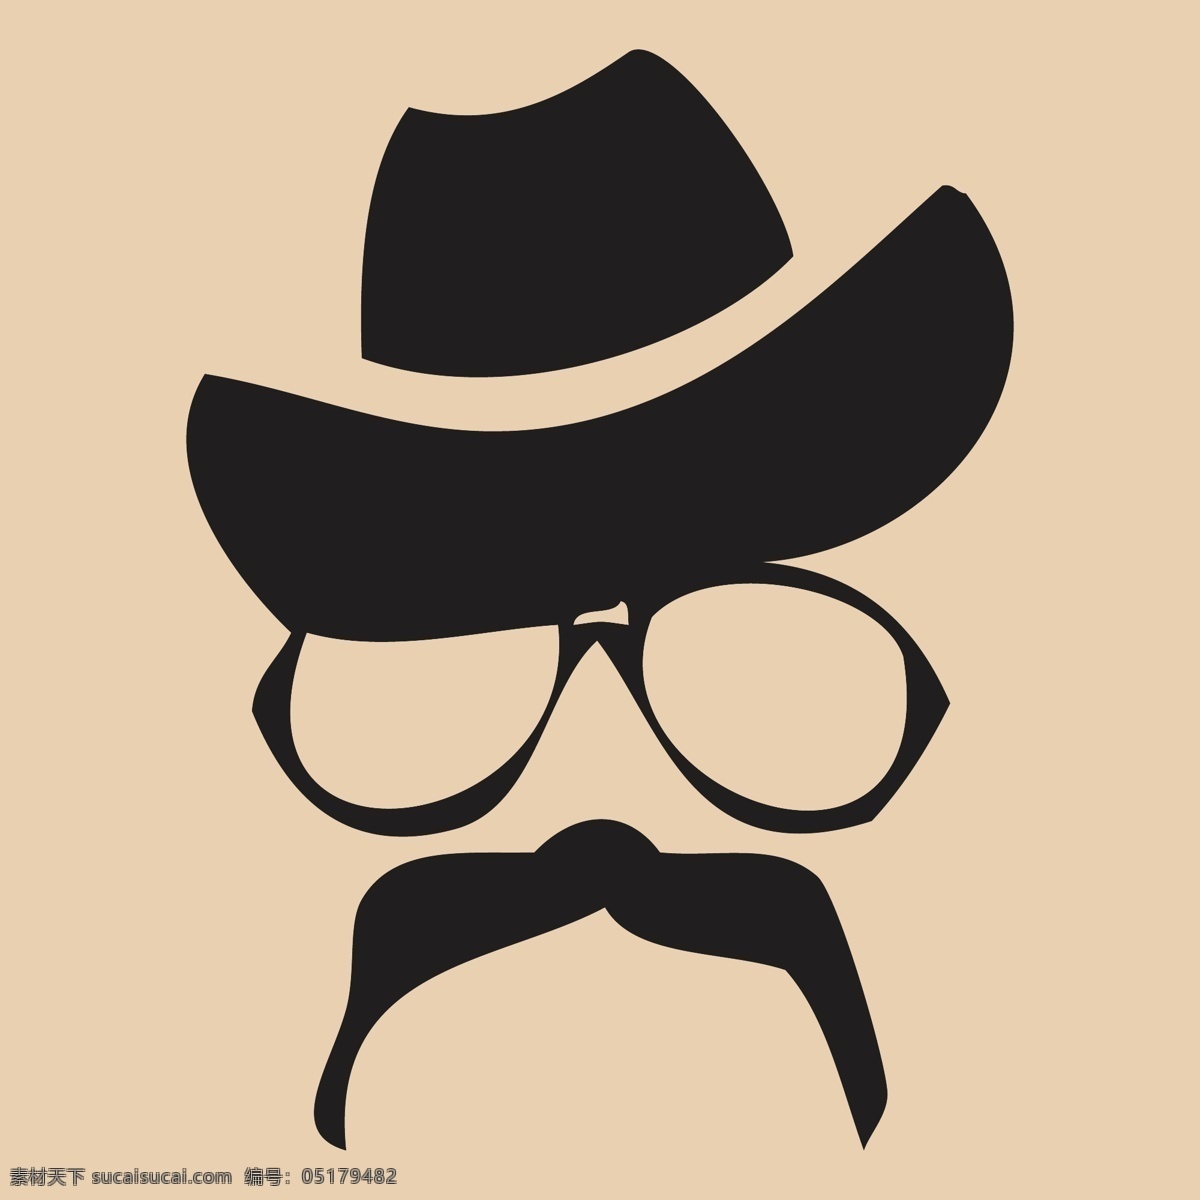 小胡子 动漫动画 胡子 卡通 帽子 设计素材 矢量图 眼镜 动漫 可爱